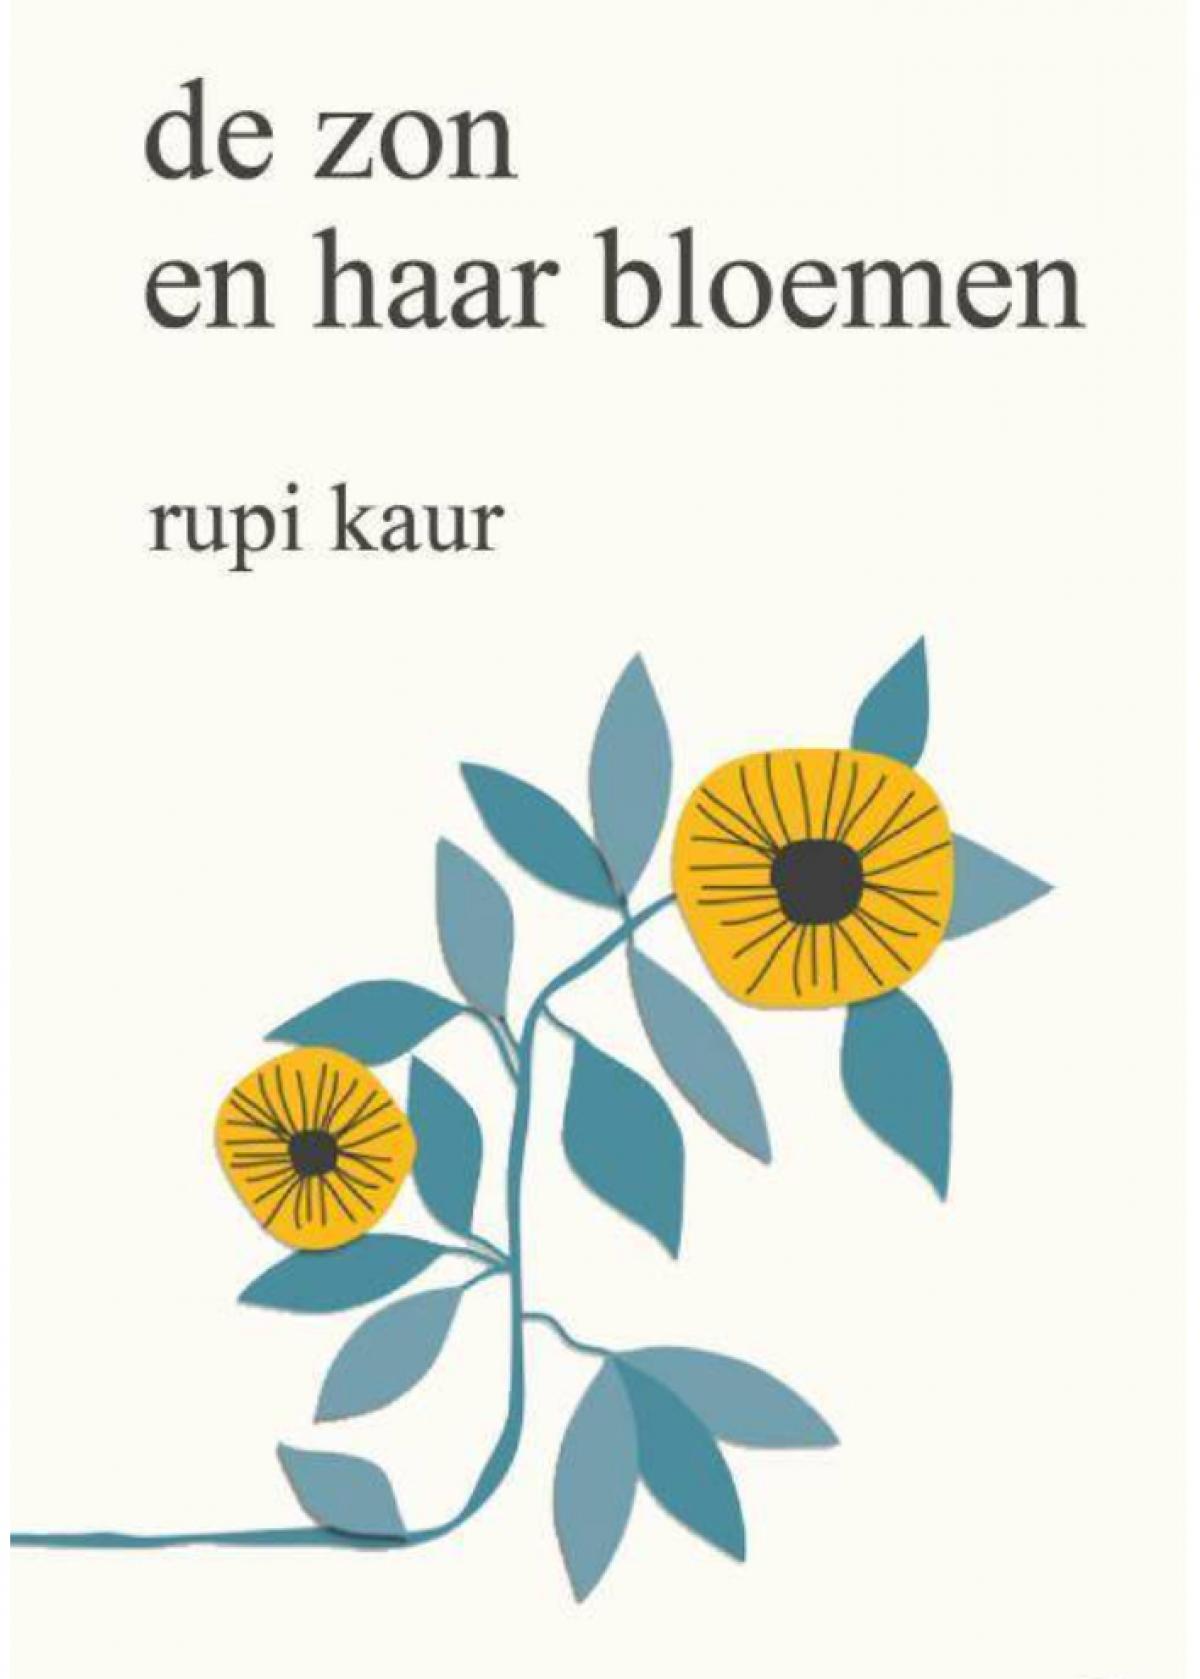 'De zon en haar bloemen' van Rupi Kaur